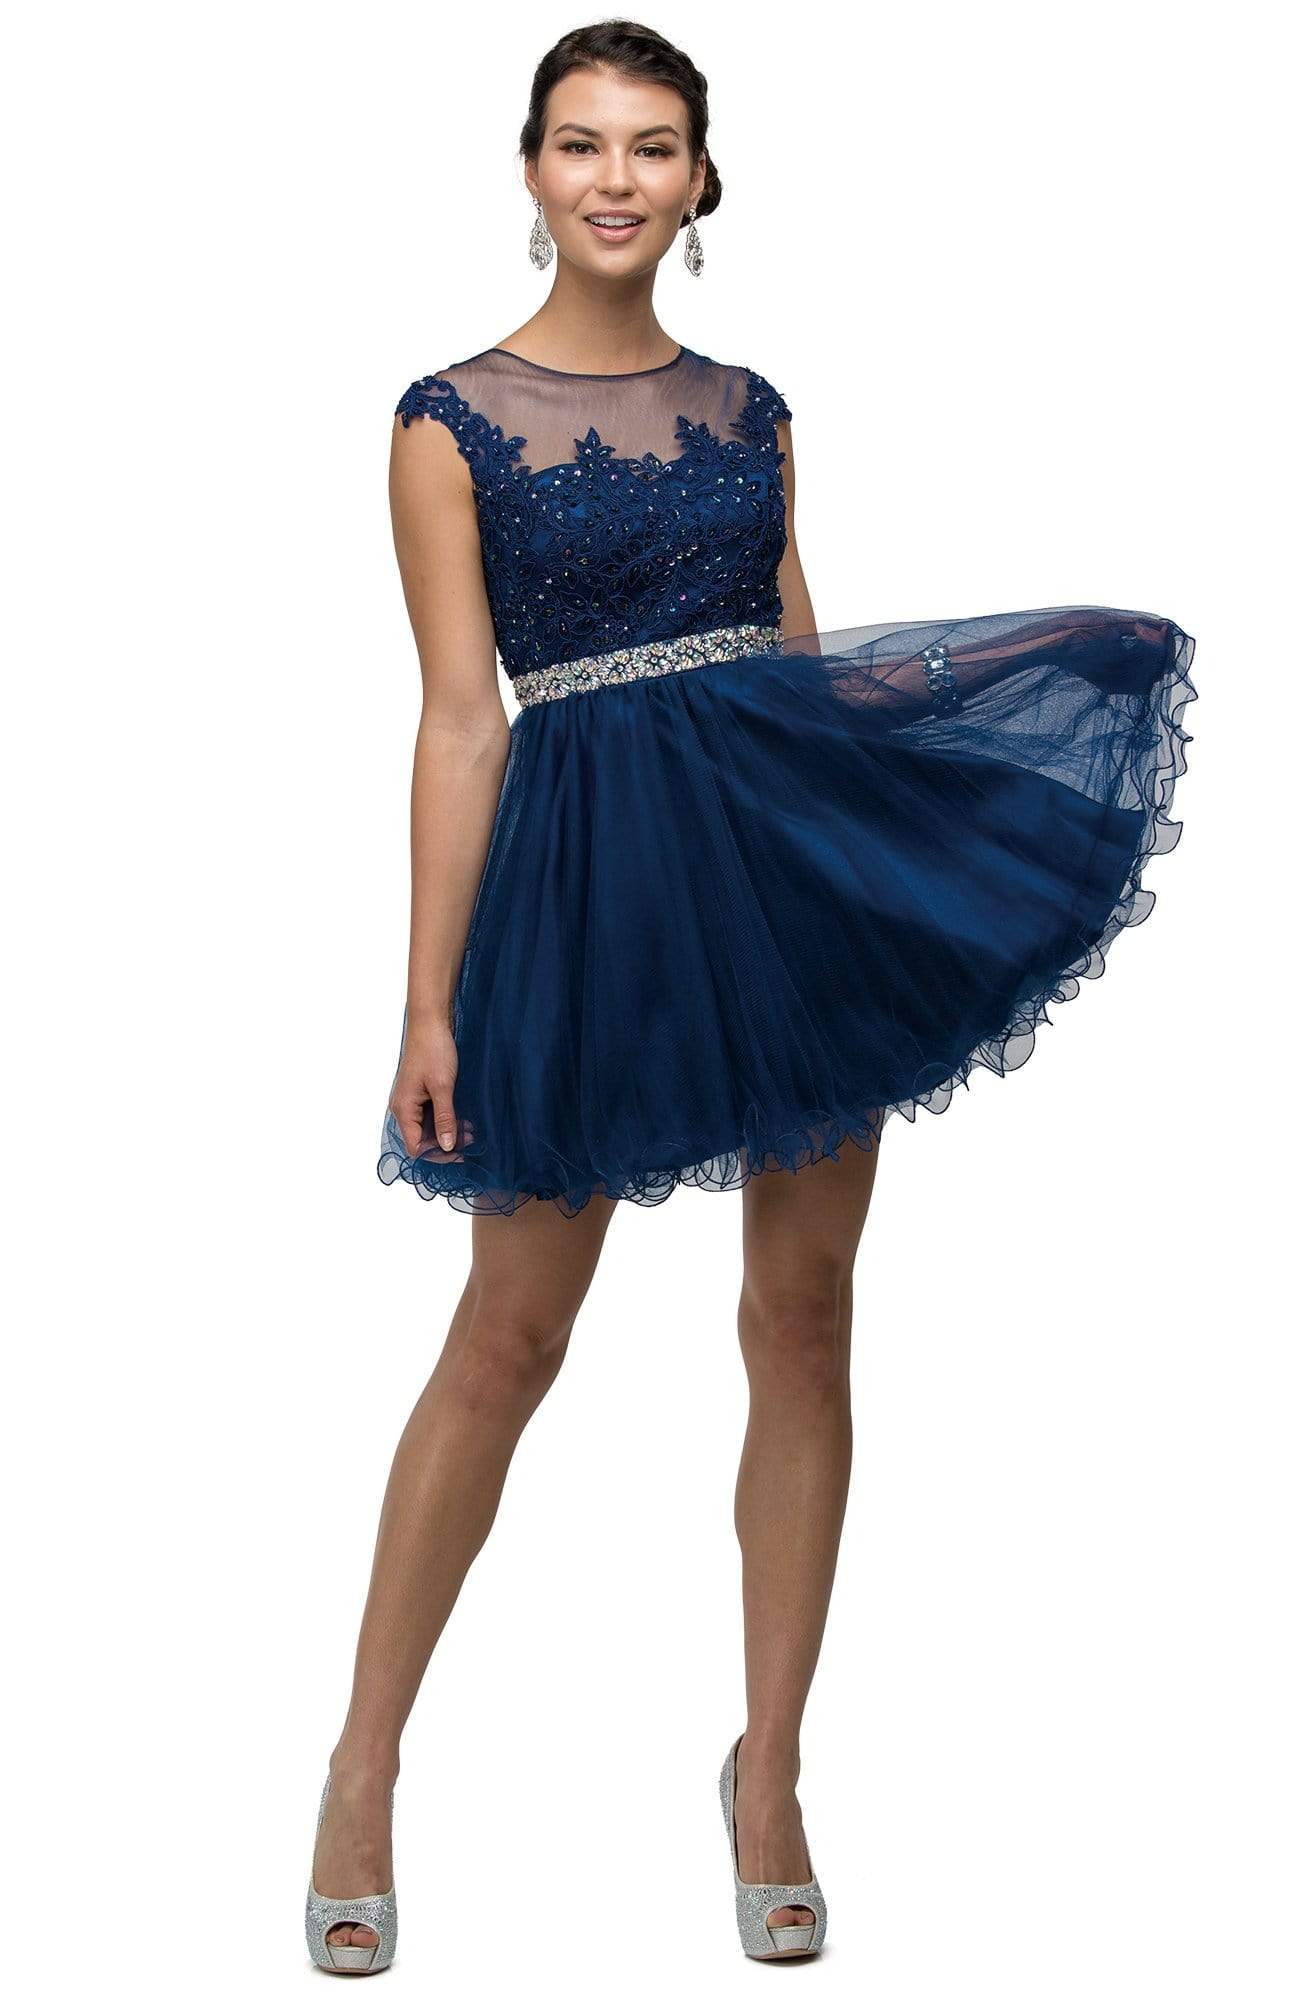 Dancing Queen - 9489 Lace Applique A-line Cocktail Dress
